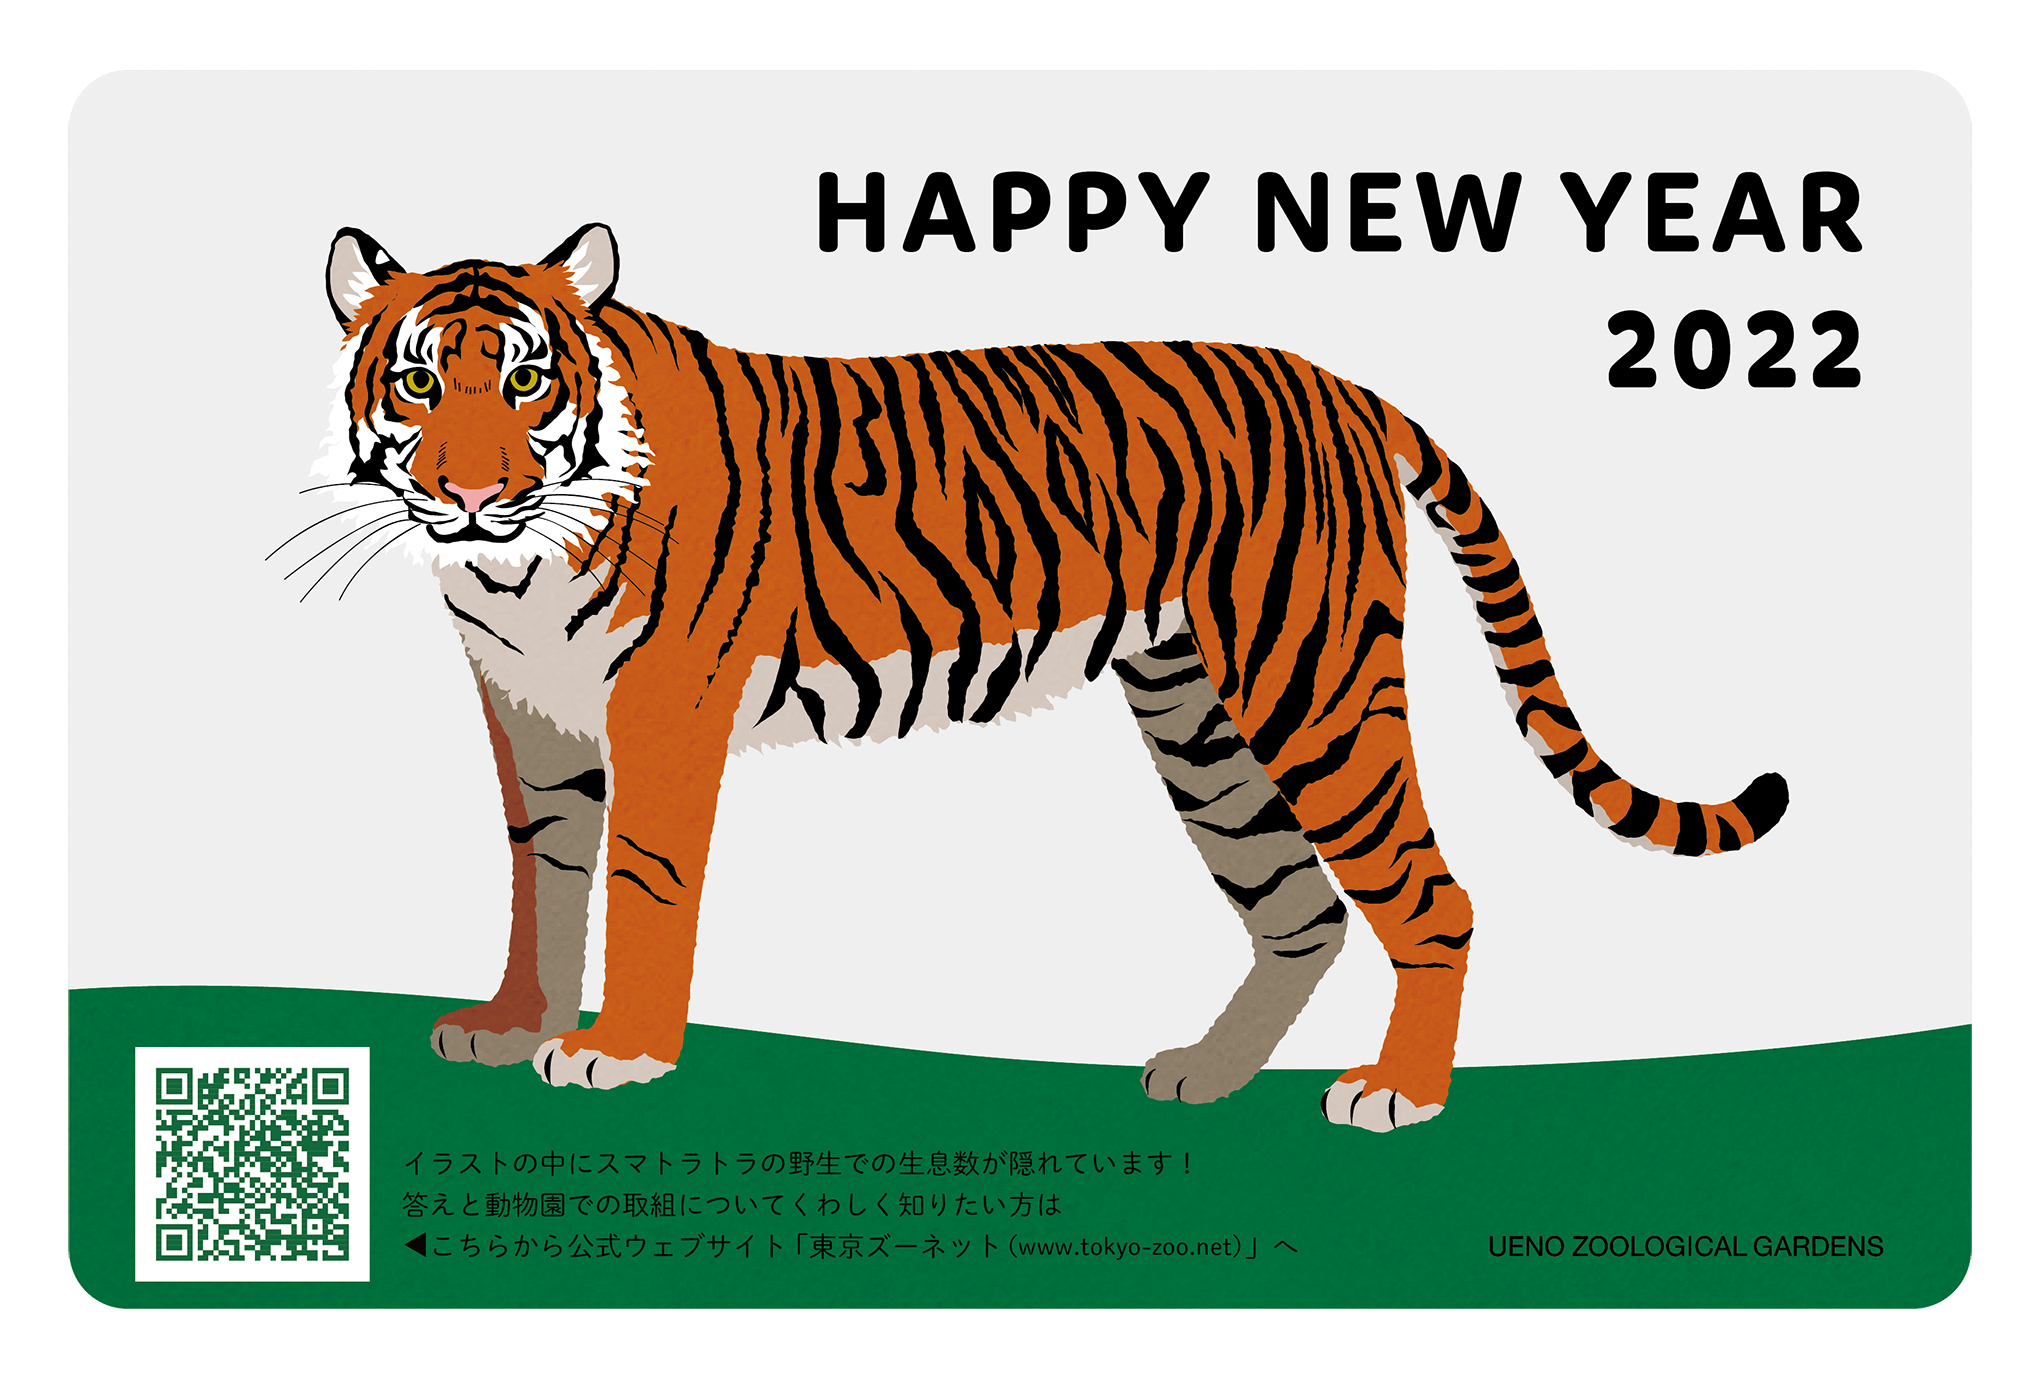 上野動物園オリジナルデザインの年賀状で新年のごあいさつをしませんか 東京ズーネット